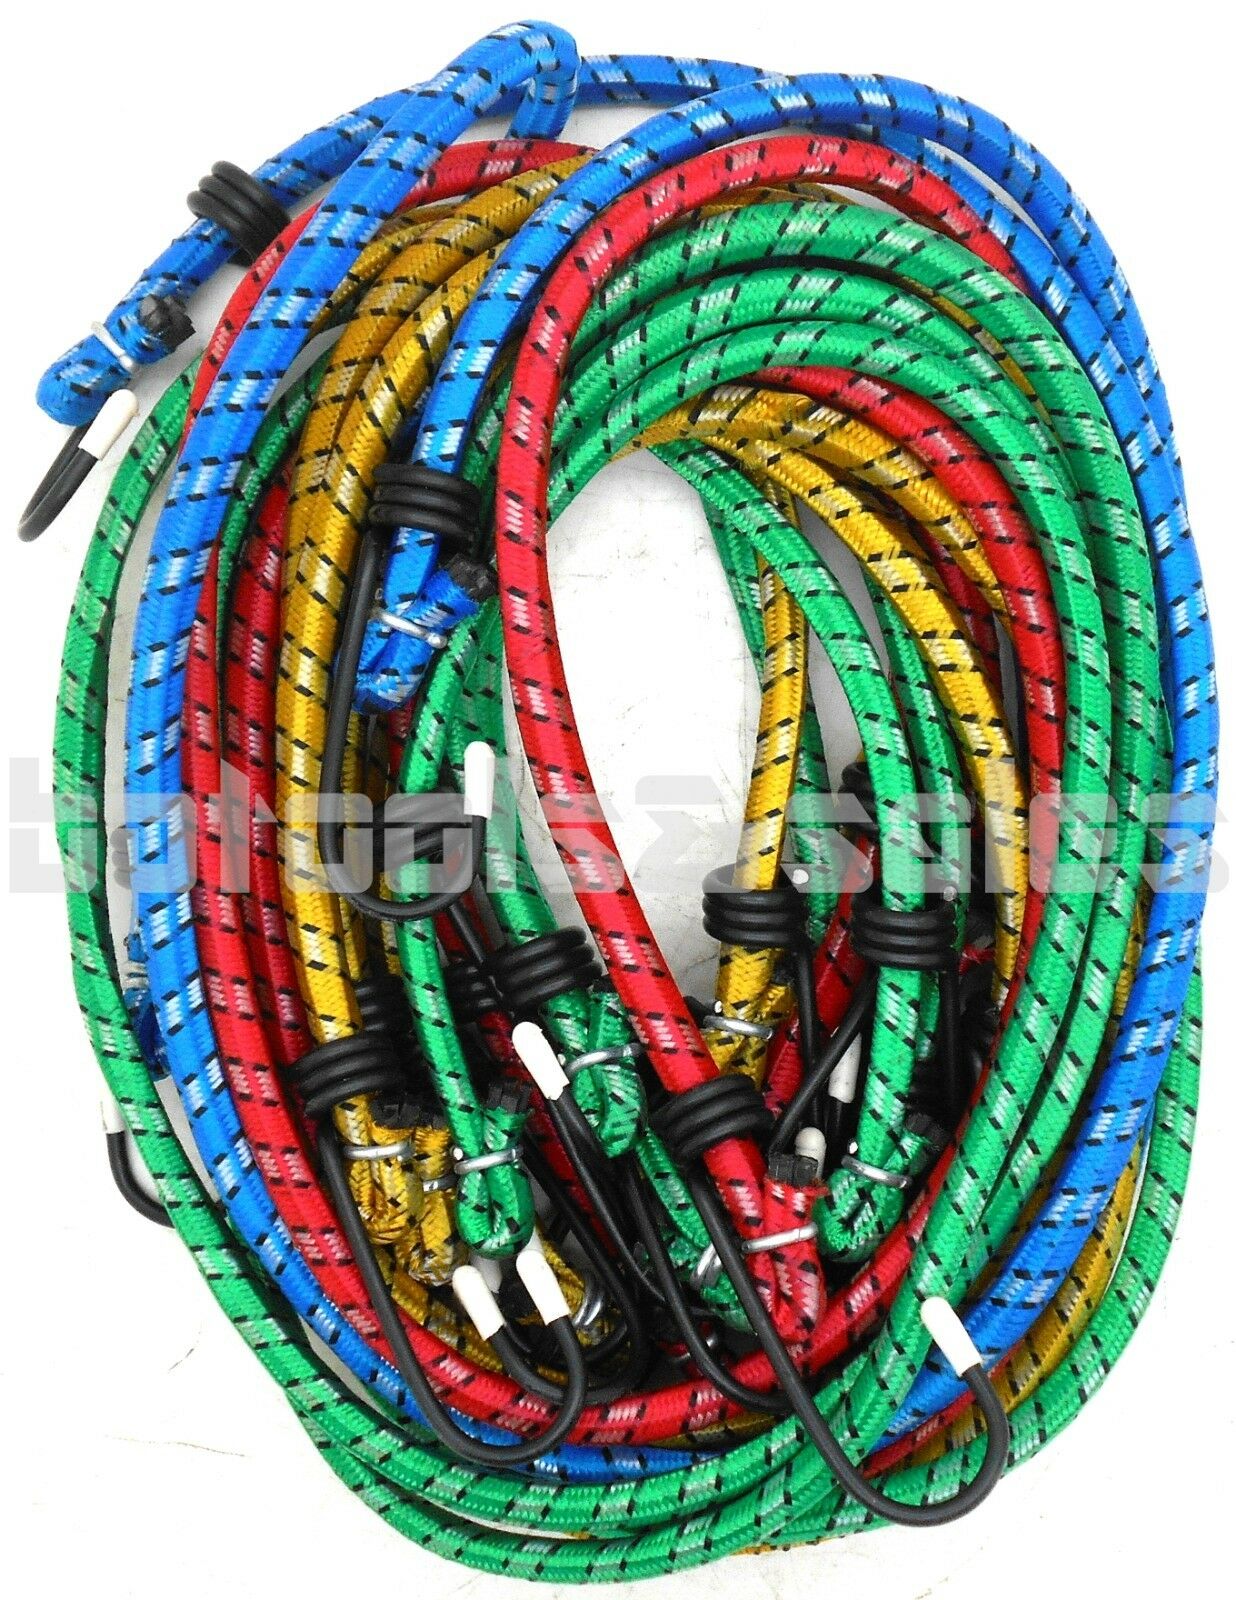 10pc Bungee Cord Tie Down Set 12" 18" 24" 30" 36" H-d Color Straps 2 Hook End